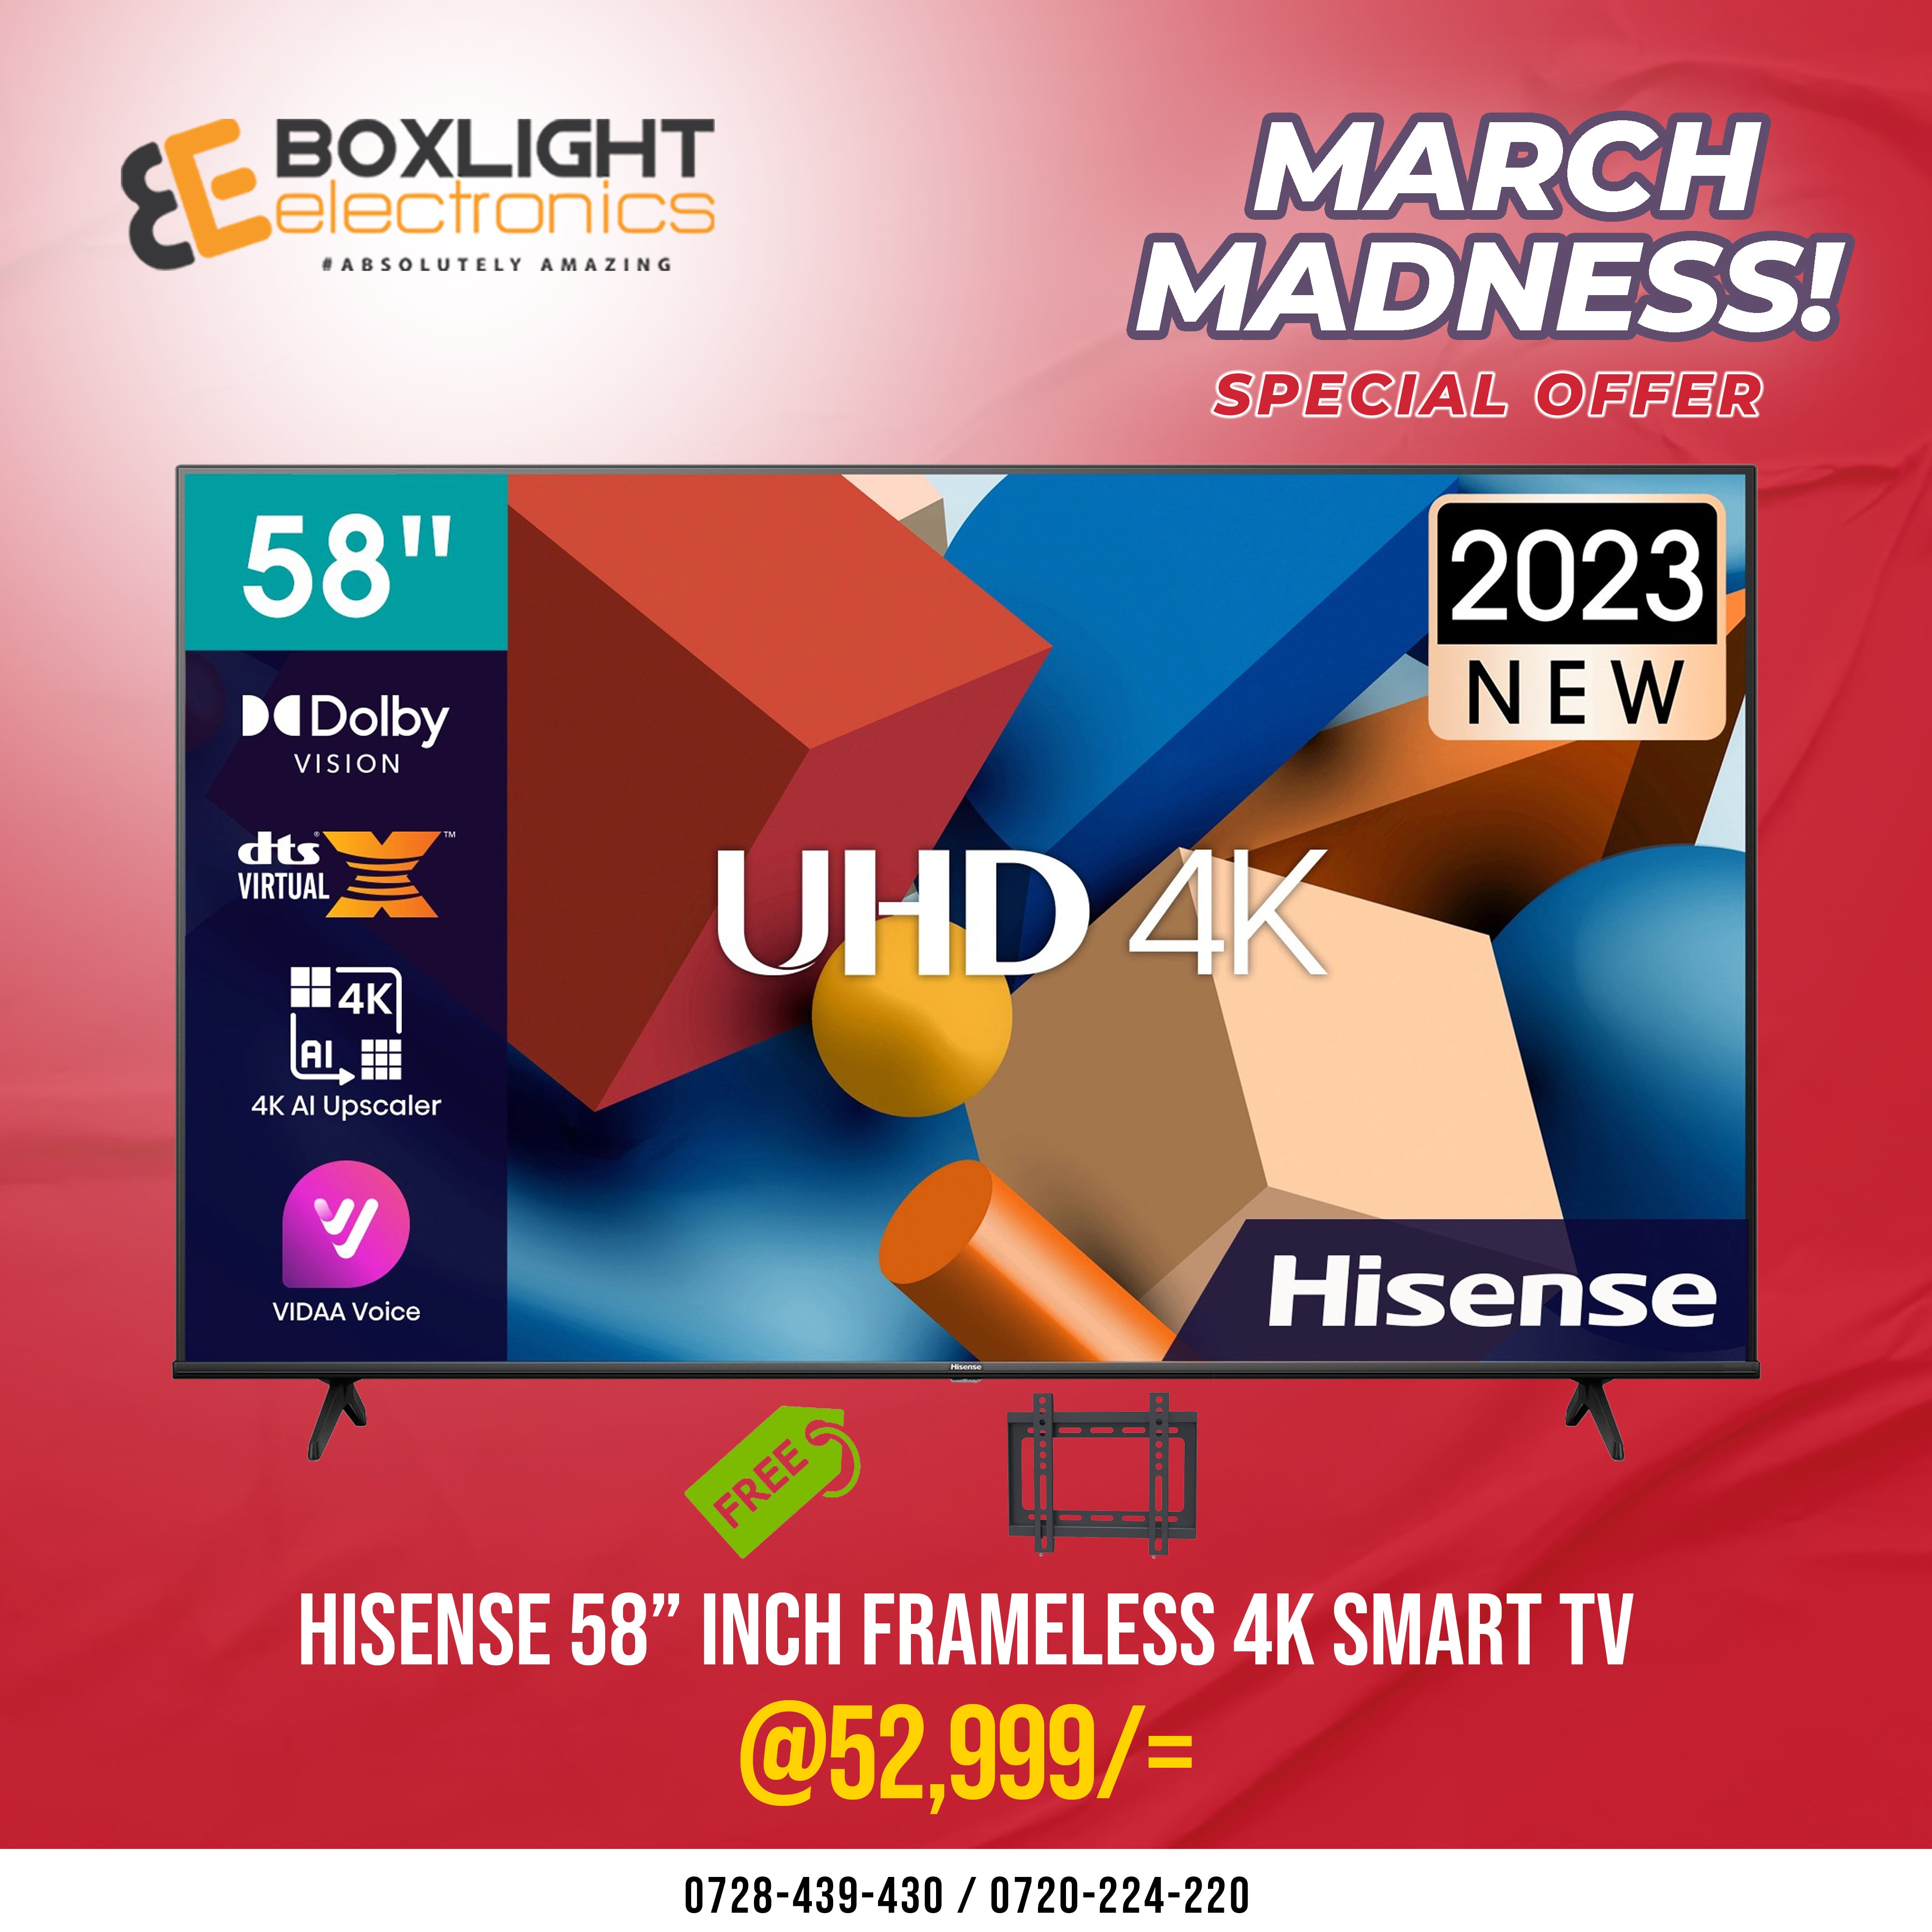 Hisense 58'' Inch 4K ULTRA HD SMART TV + Free Gifts